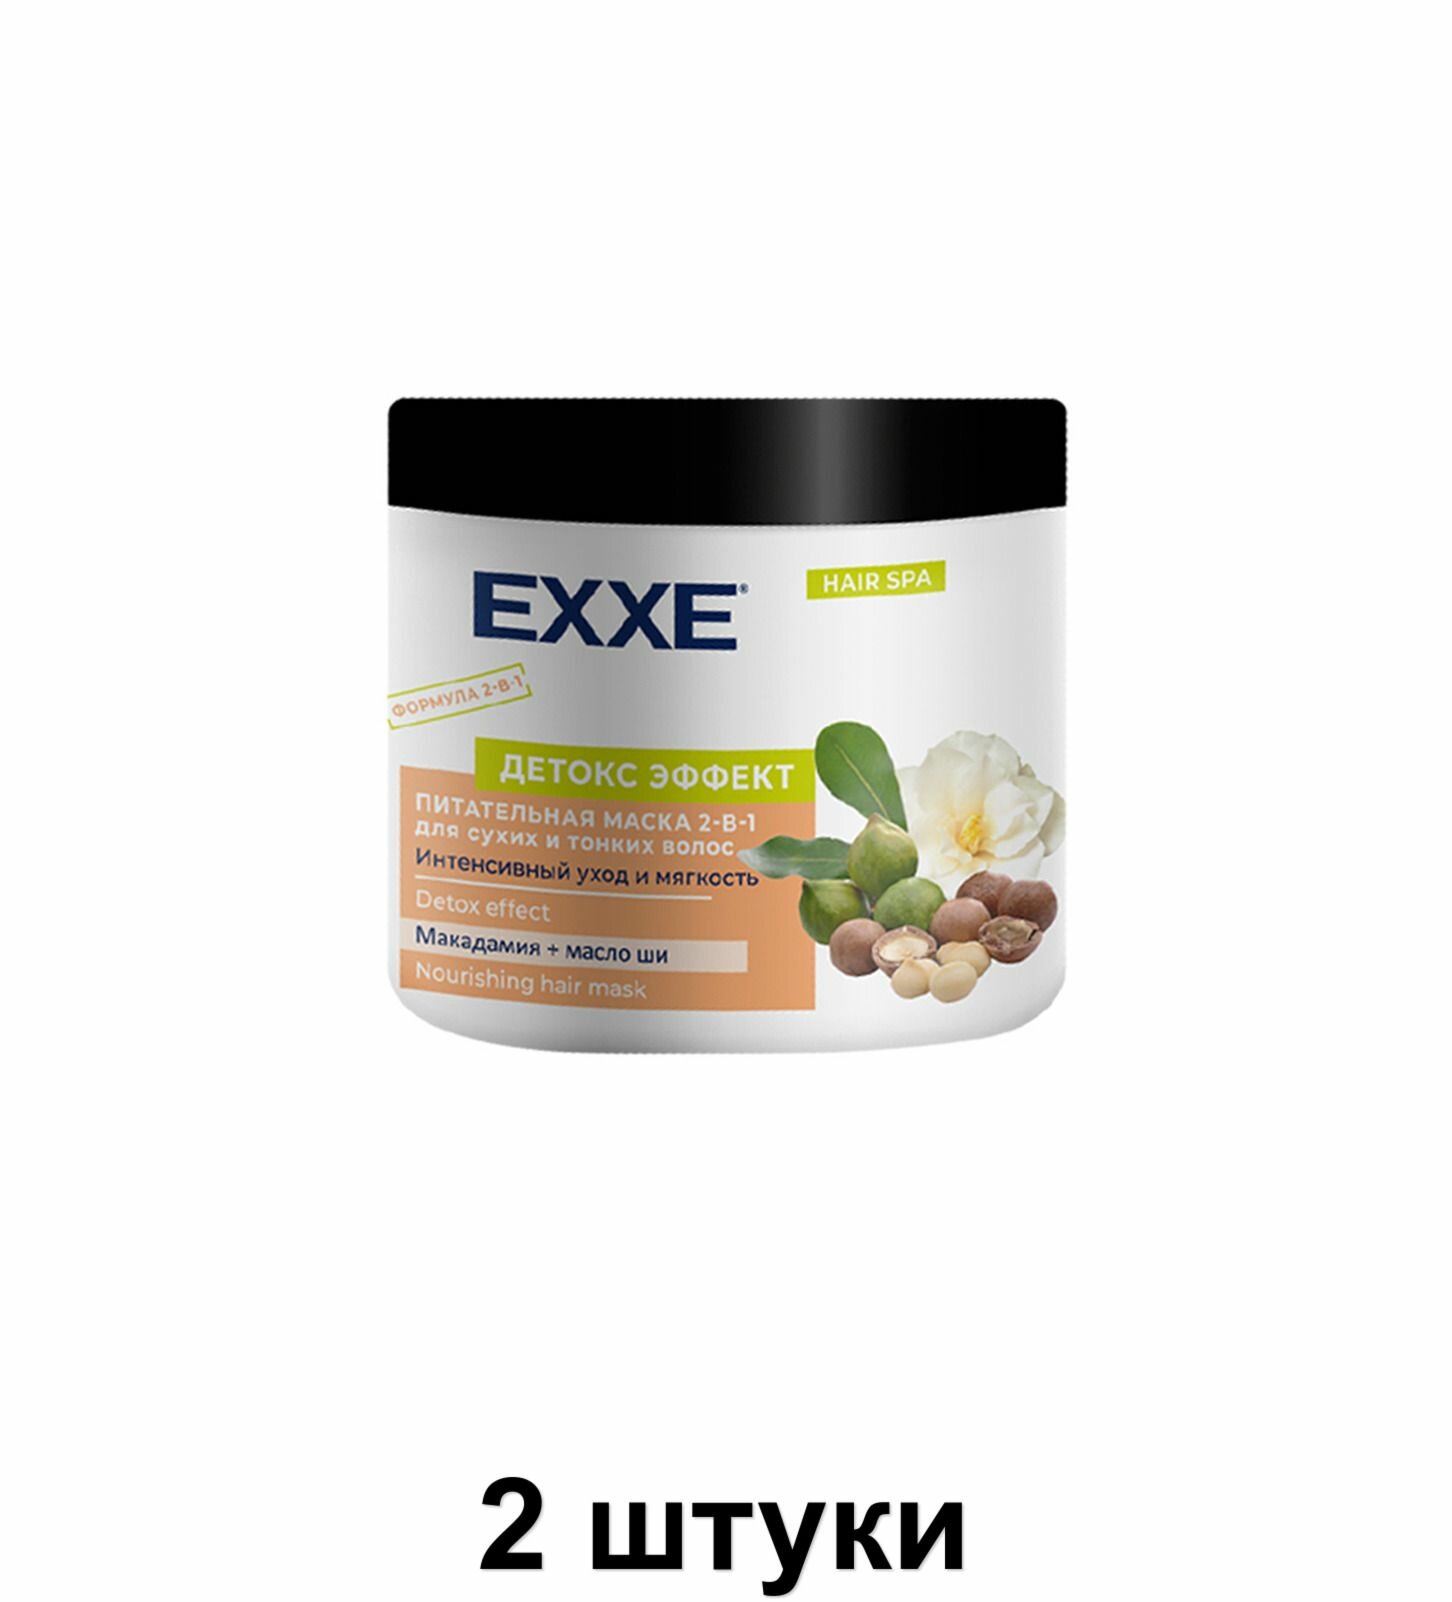 EXXE Маска для волос "Детокс эффект" Питательная, 500 мл, 2 шт